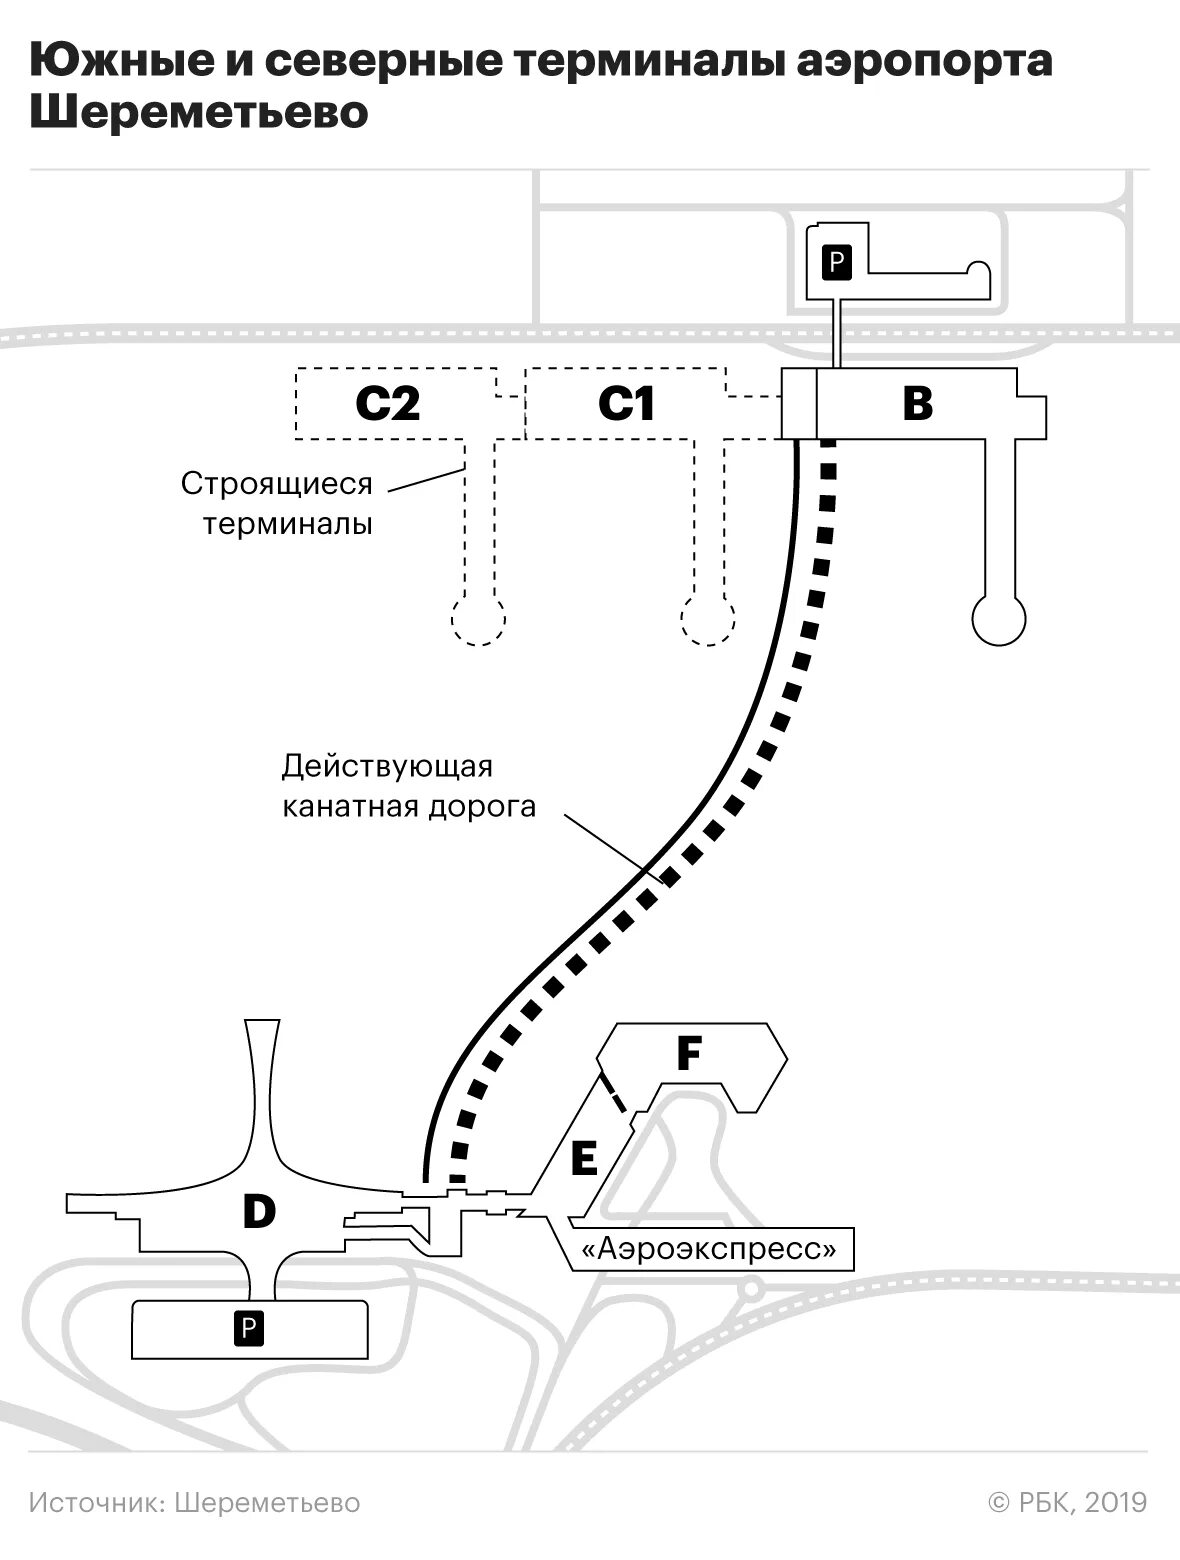 Шереметьево терминал в и с расстояние. Схема аэропорта Шереметьево с терминалами. Аэропорт Шереметьево из терминала с в терминал в схема. Терминал Аэроэкспресс в Шереметьево схема. Шереметьево терминал в схема из b в d.